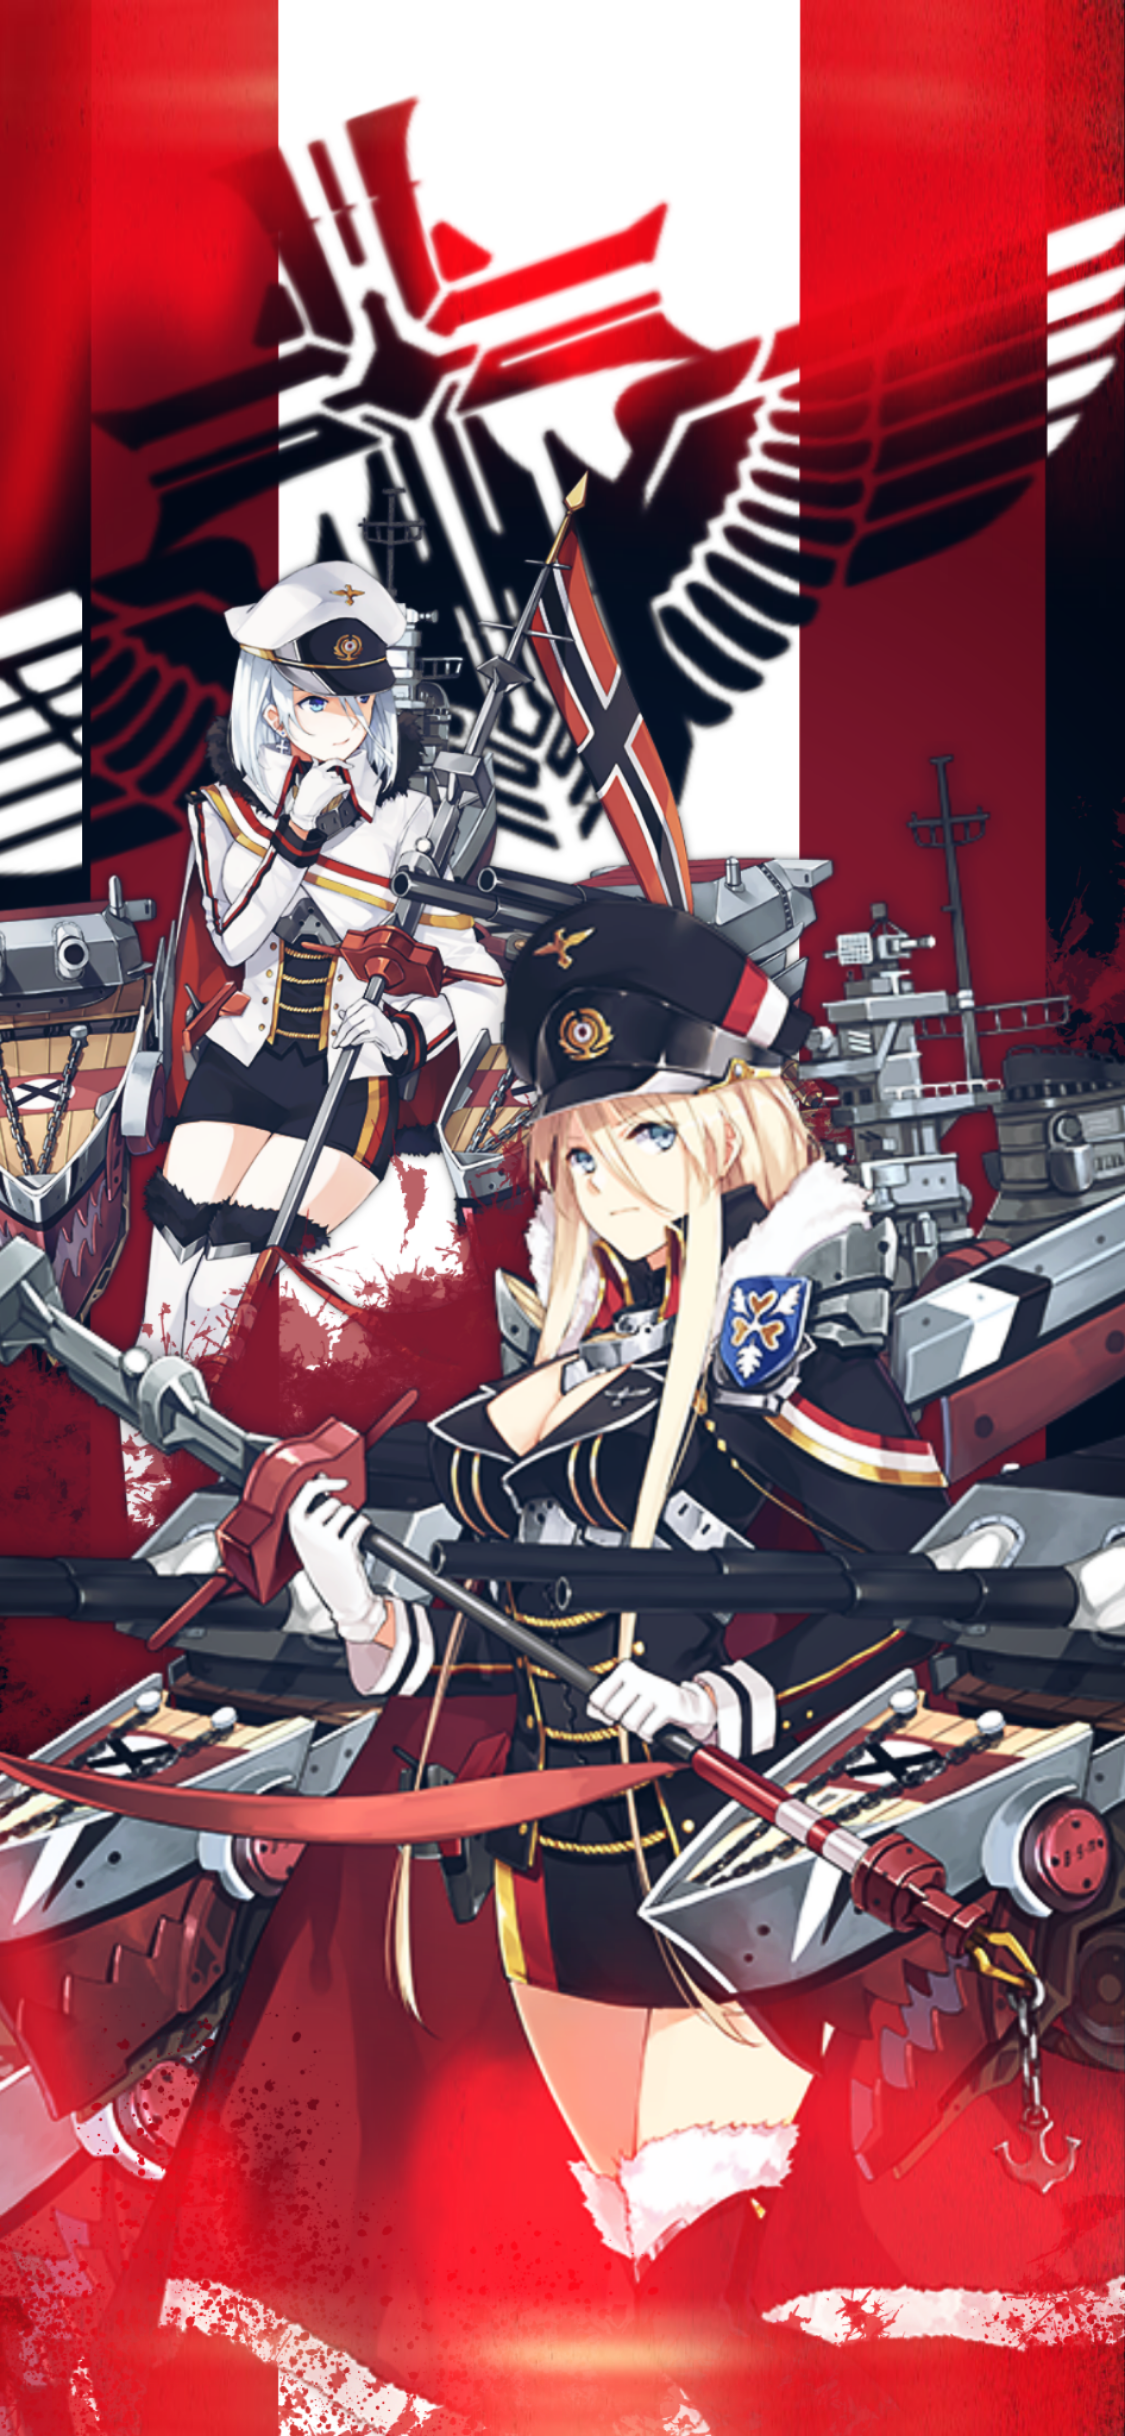 Bismarck and Tirplitz wallpaper (iPhone 10) (Request)